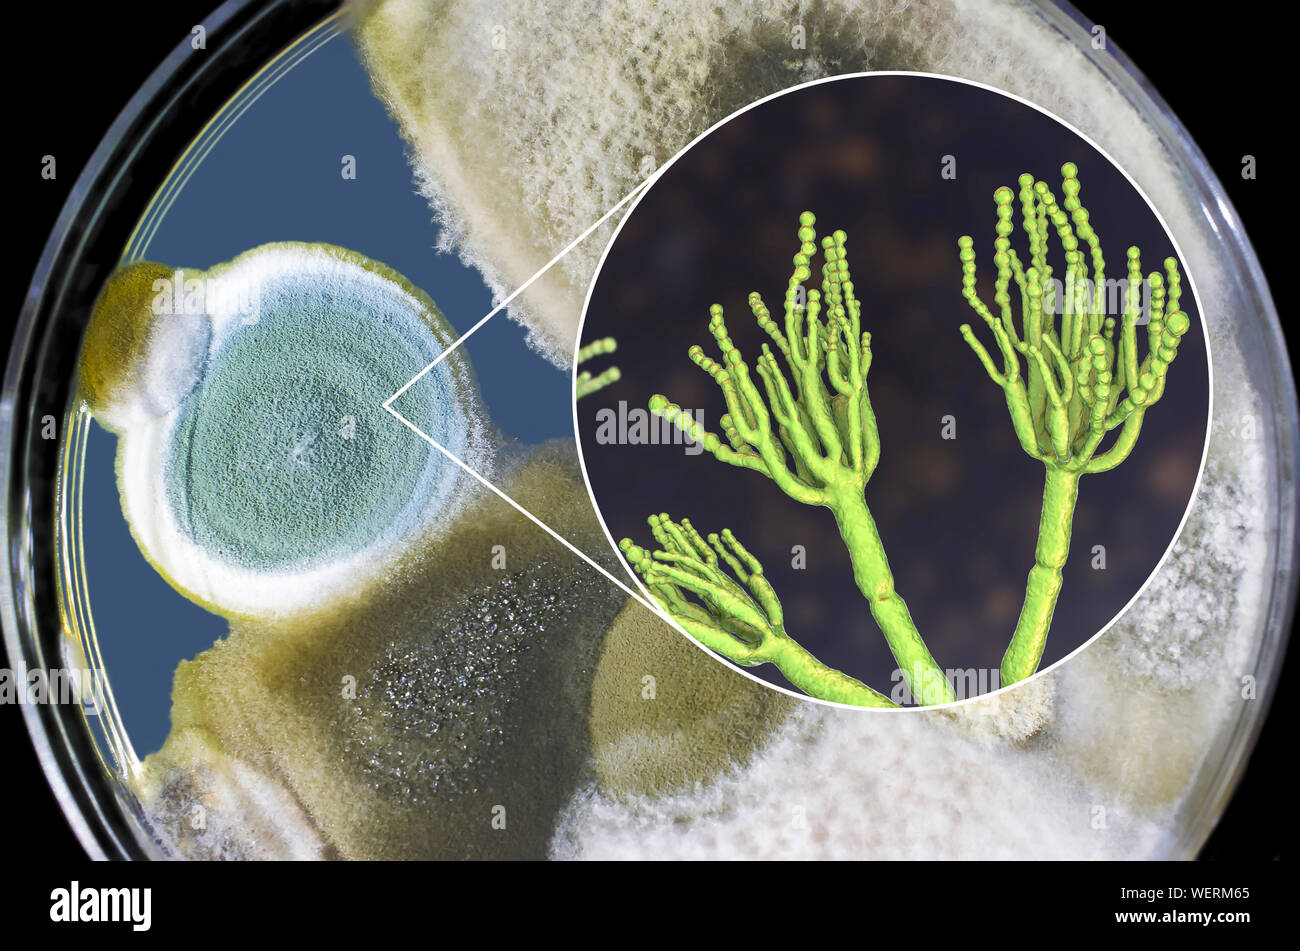 Penicillium fungus, composite image Stock Photo